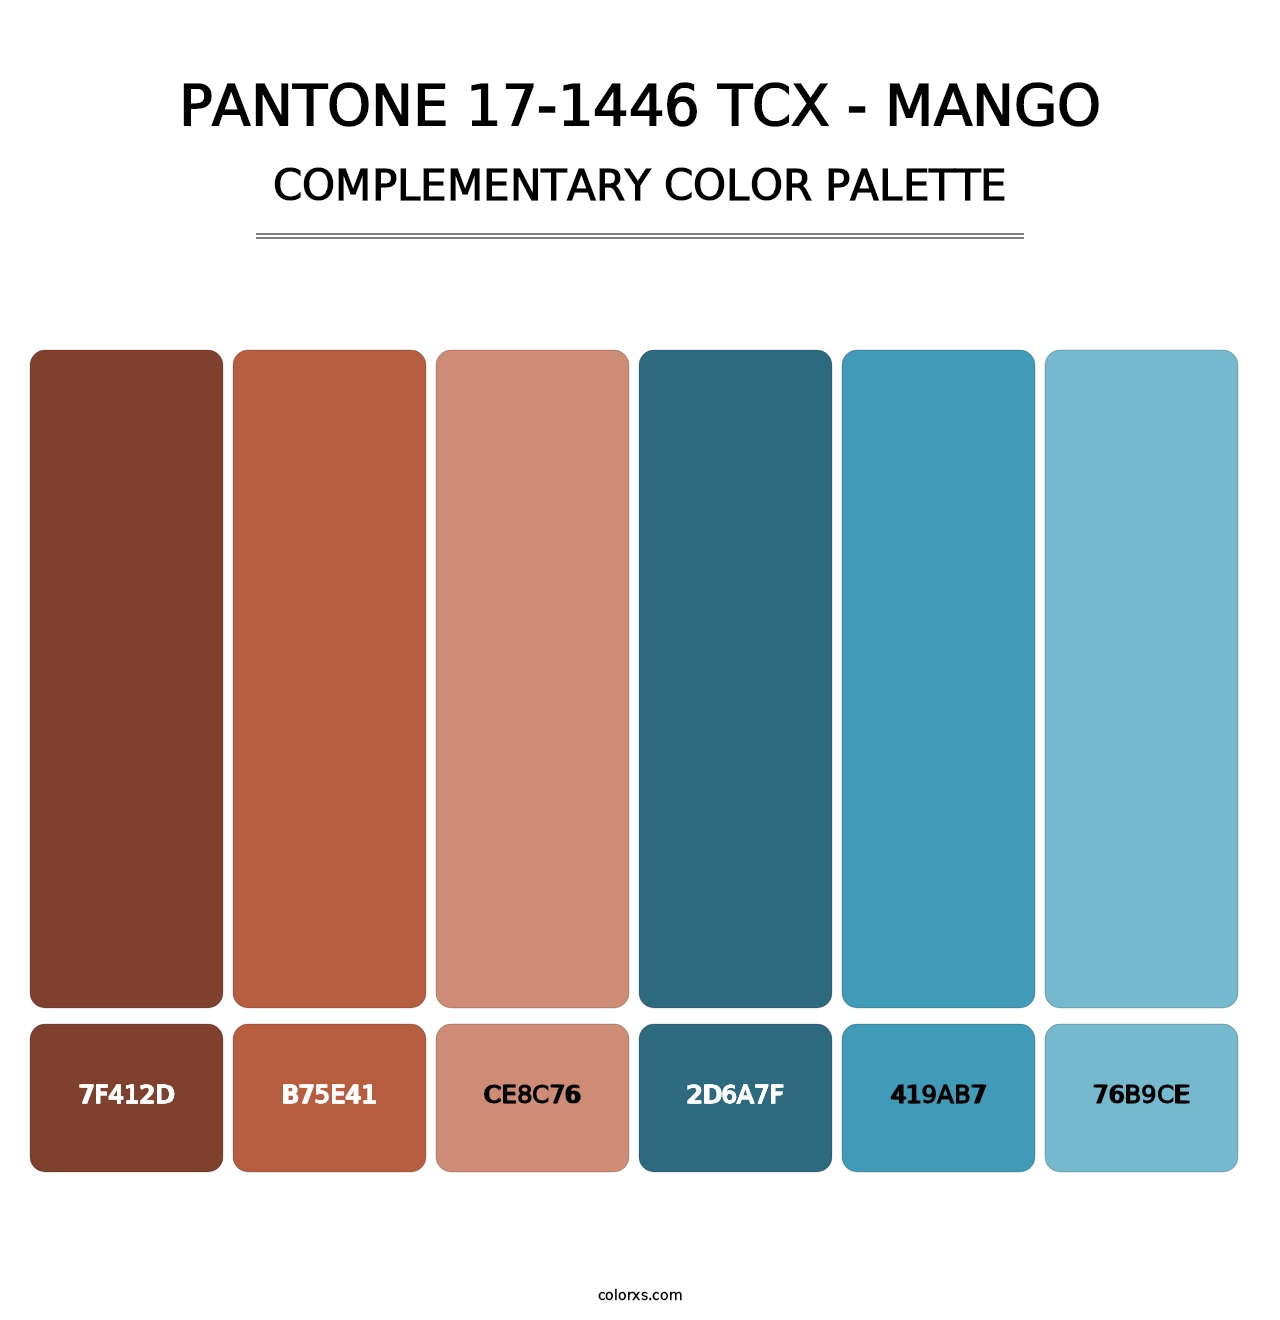 PANTONE 17-1446 TCX - Mango - Complementary Color Palette